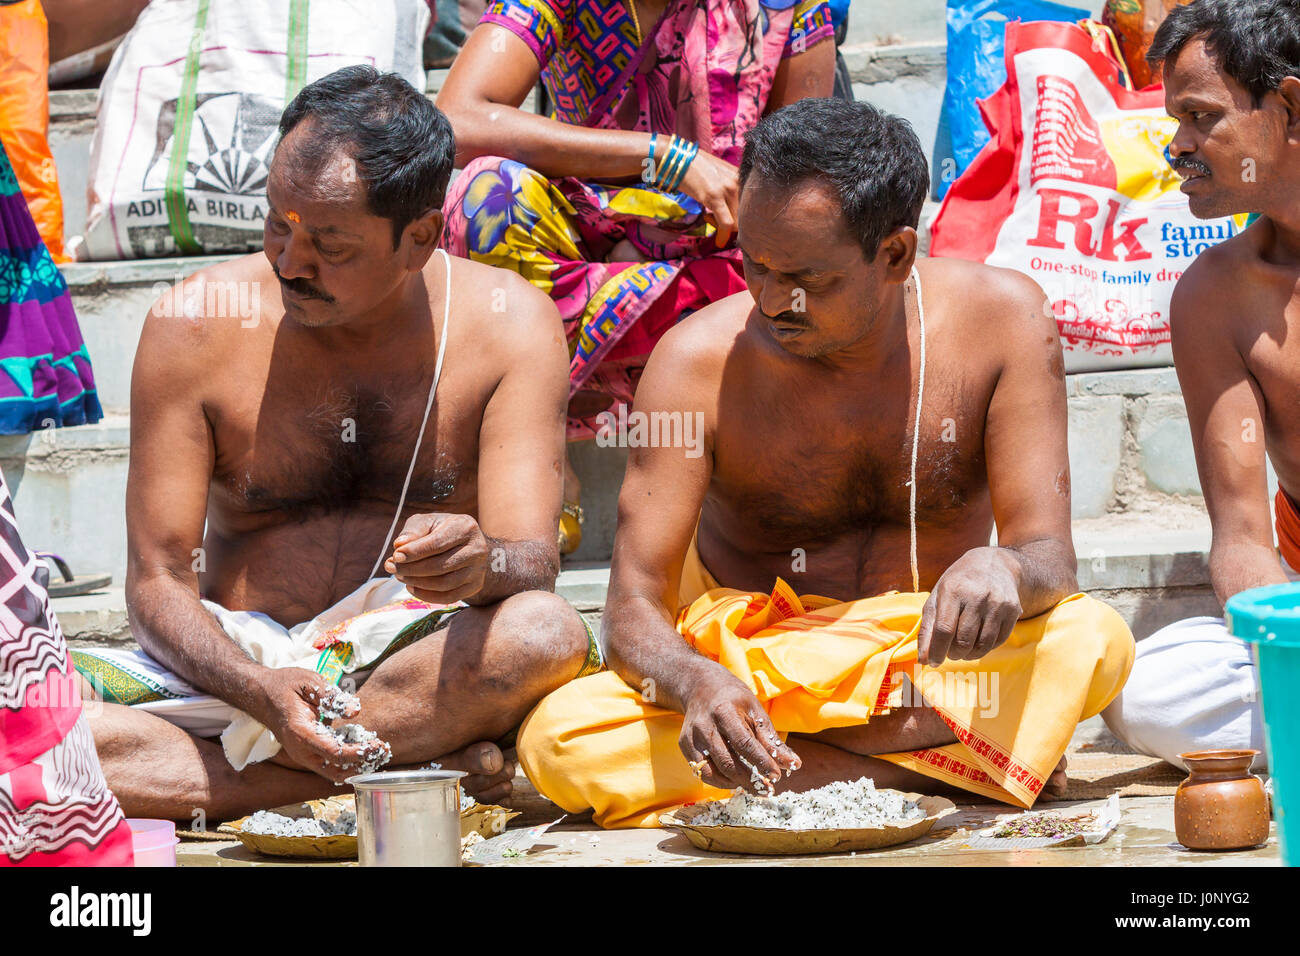 BADRINATH, Inde, 5 juin - Les pèlerins propose des prières à leurs ancêtres, près de la rivière Alakananda au temple d'Badarinath en Inde du Nord le 5 juin Banque D'Images